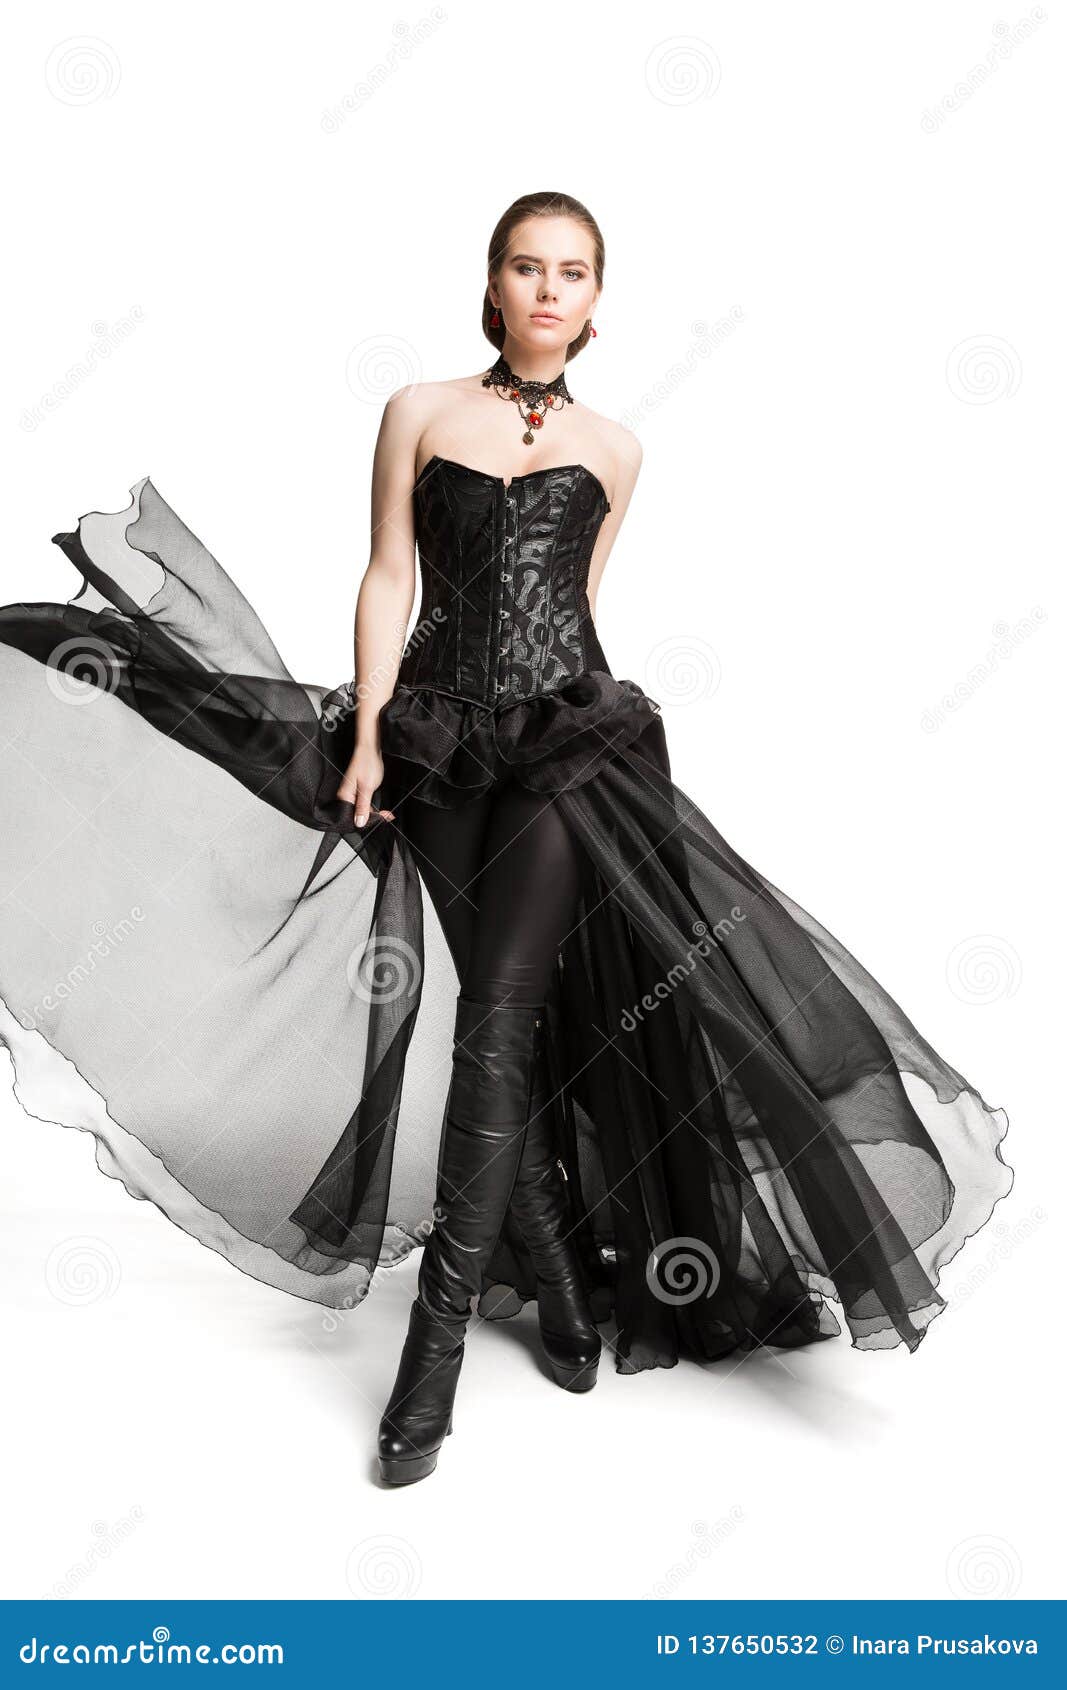 Welkom bioscoop Vochtigheid Mannequin Black Corset Dress, Leerbroek, Mooie Vrouw in Gotische Witte  Toga, Stock Foto - Image of chiffon, leuk: 137650532